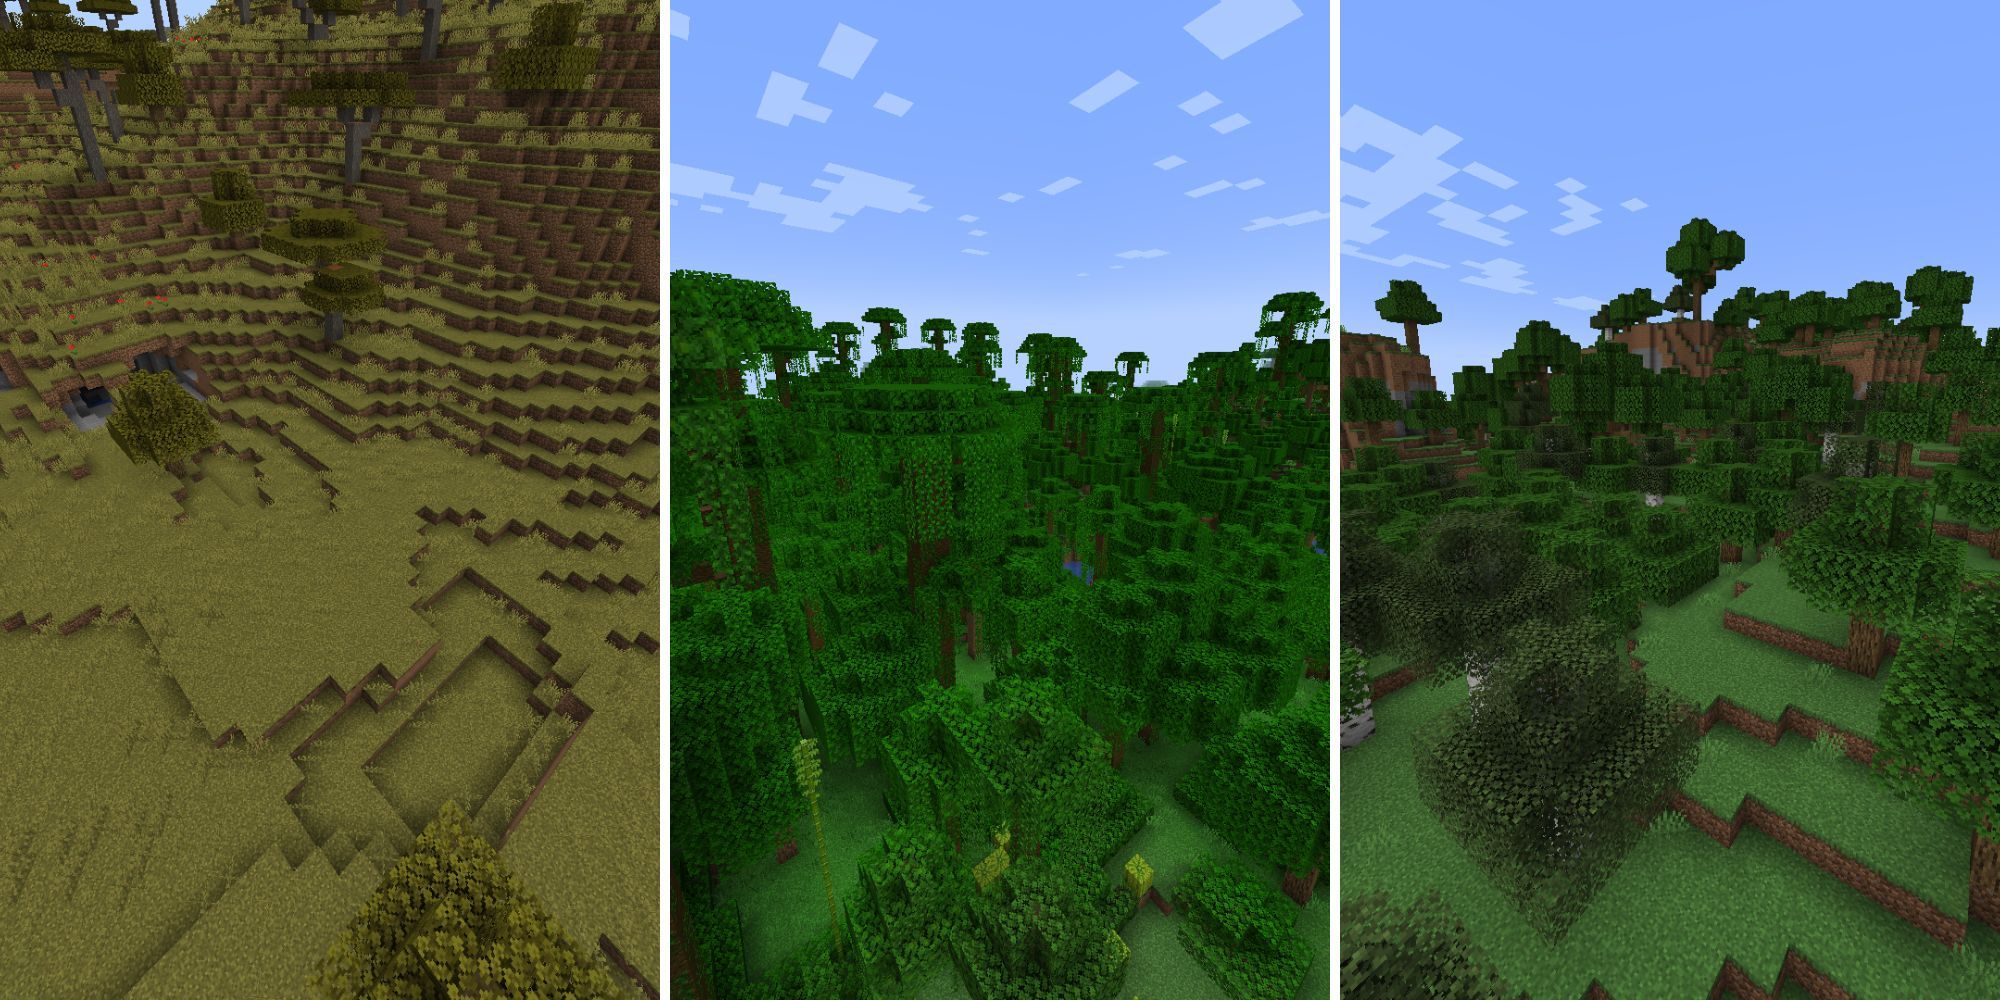 Ein geteiltes Bild, das drei verschiedene Biome zeigt: eine Savanne, einen Dschungel und einen Wald.